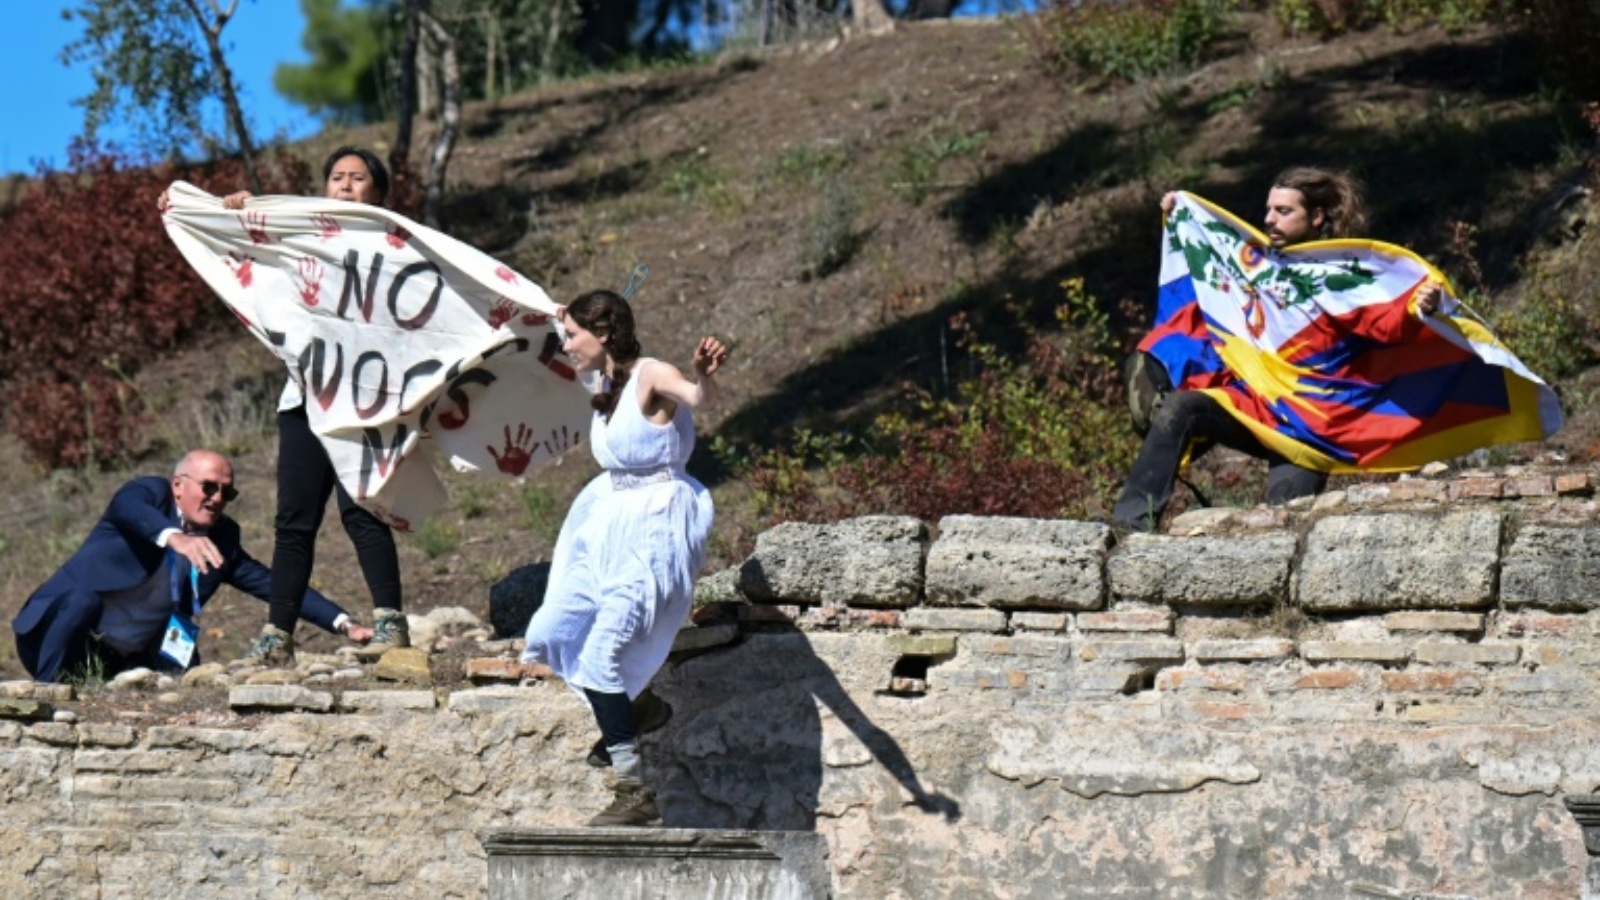 رجل أمن يحاول منع ناشطين من رفع علم التيبت ولافتة معارضة لاقامة اولمبياد بكين الشتوي لعام 2022، وذلك خلال إيقاد الشعلة الأولمبية في موقع أولمبيا القديم، جنوب اليونان في 18 تشرين الأول/أكتوبر 2021.